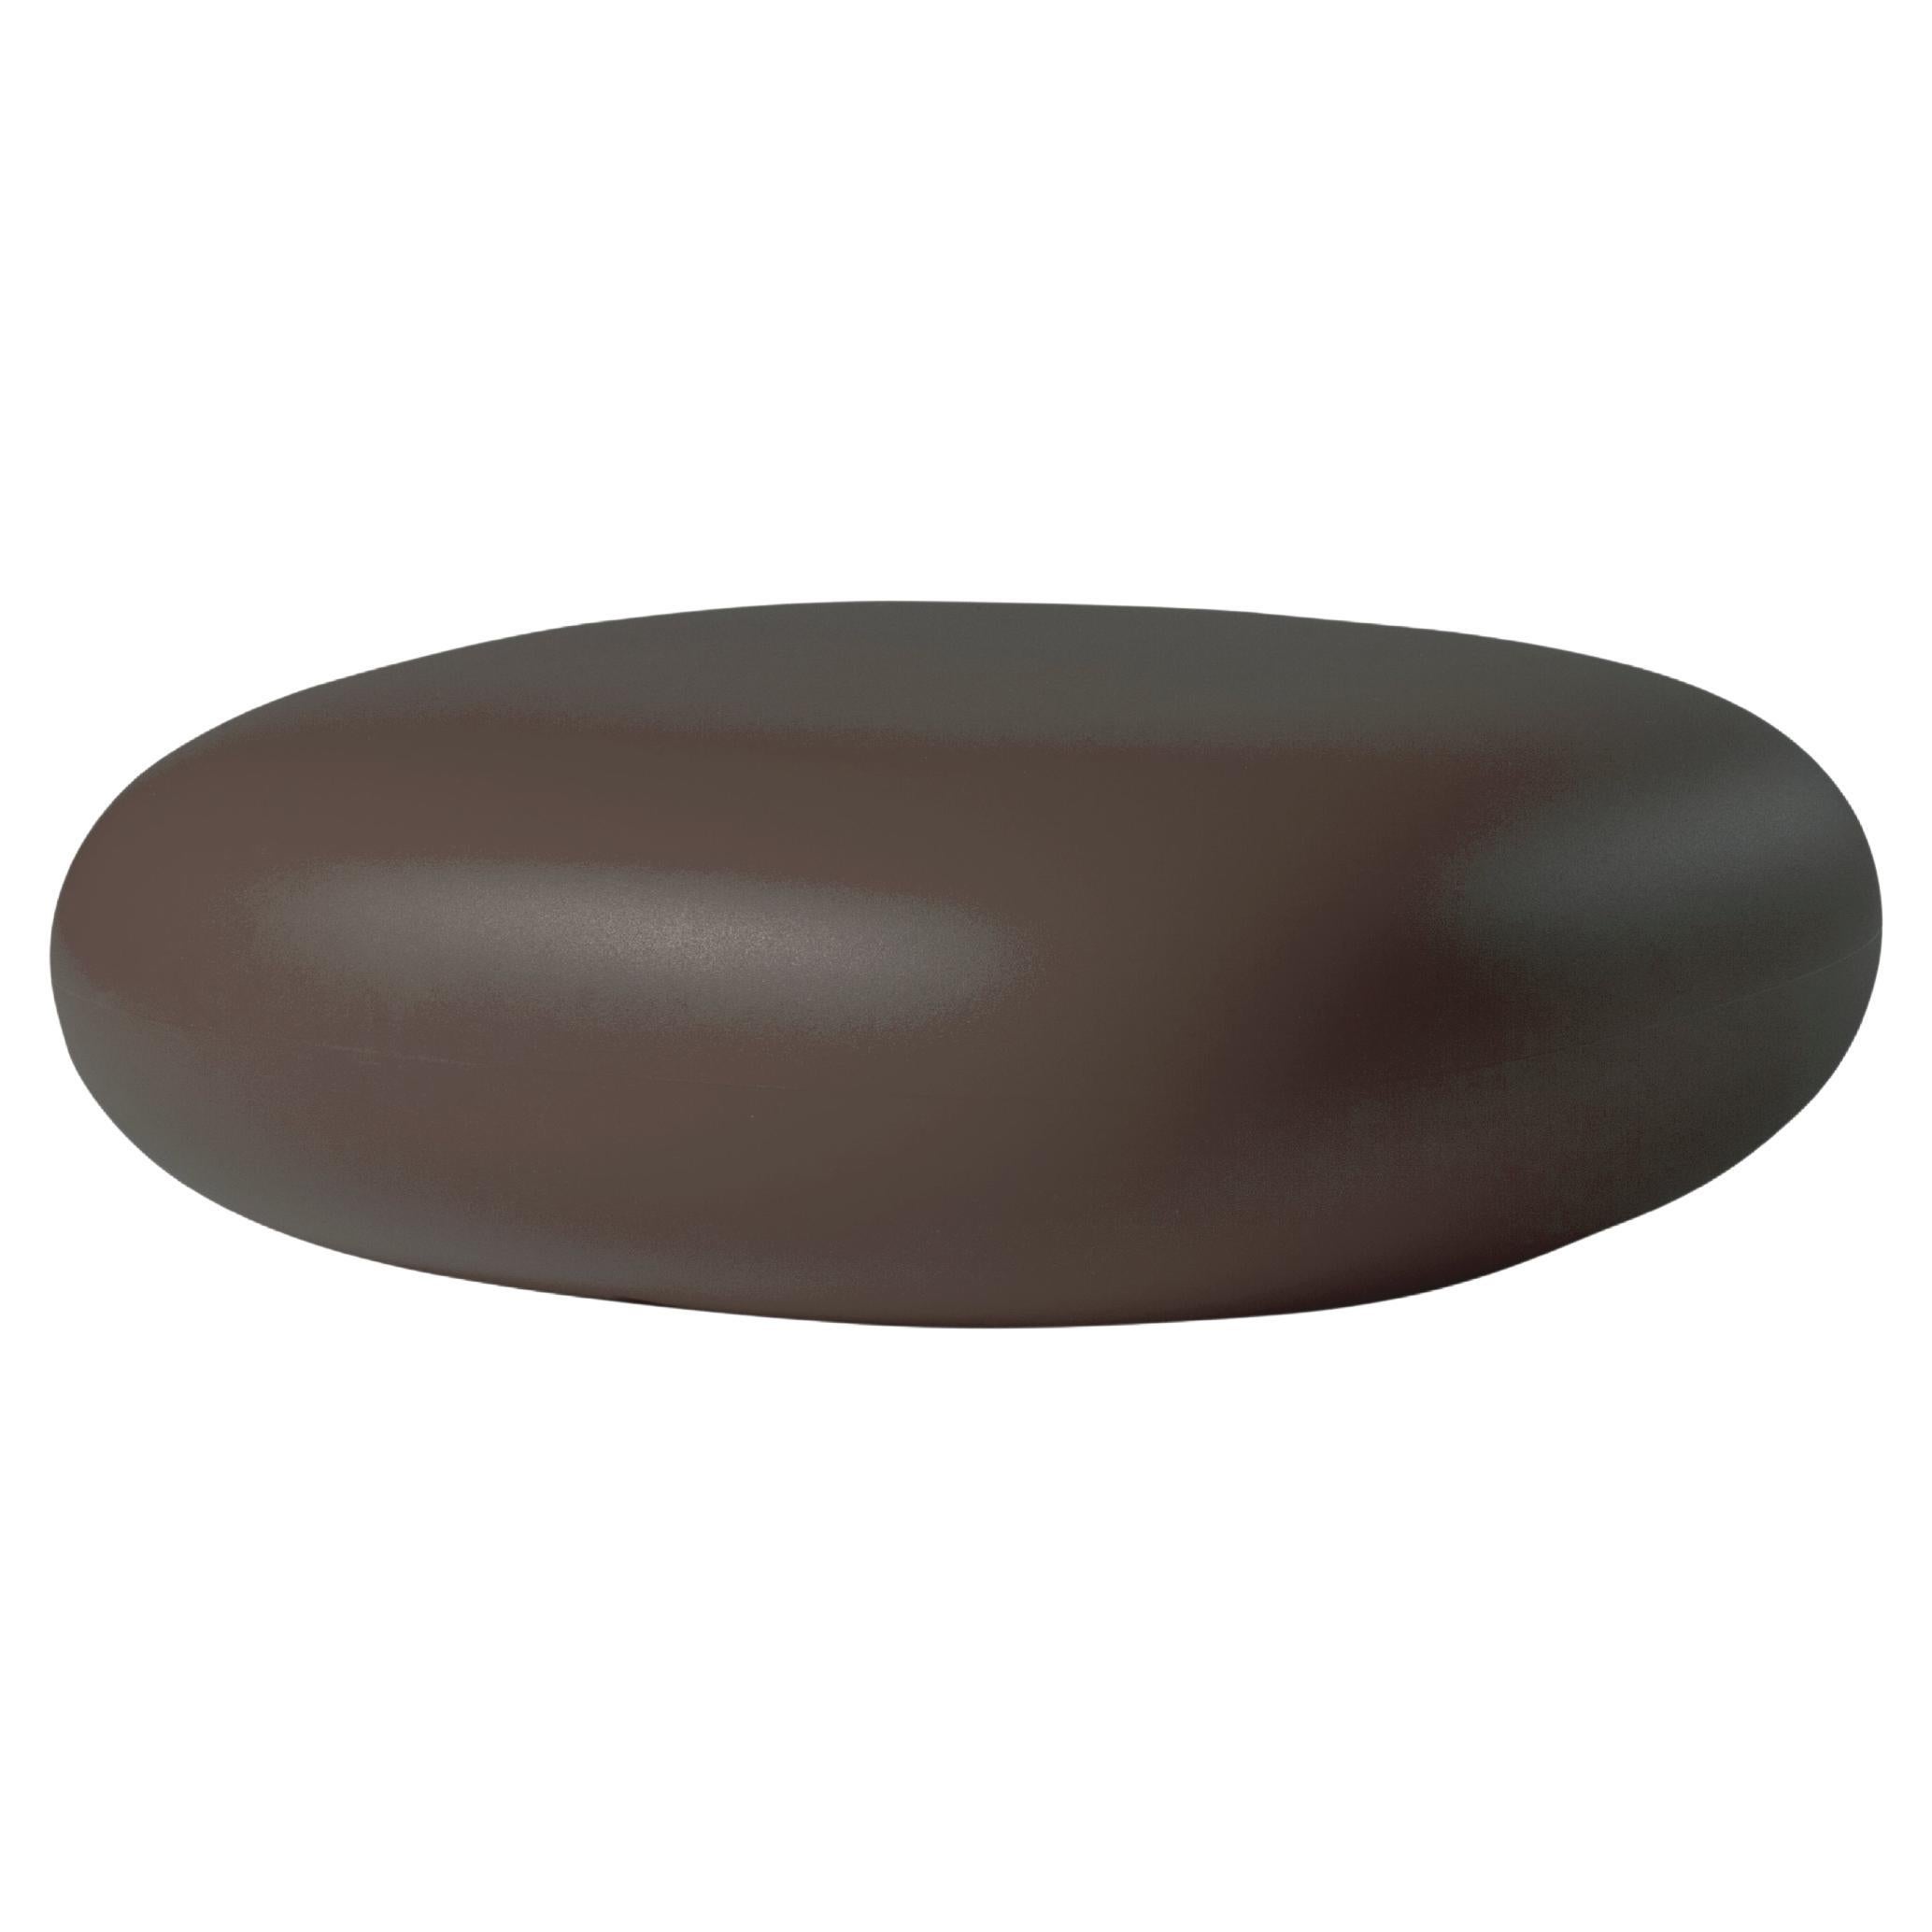 Pouf bas Slide Design en marron chocolat de Marcel Wanders